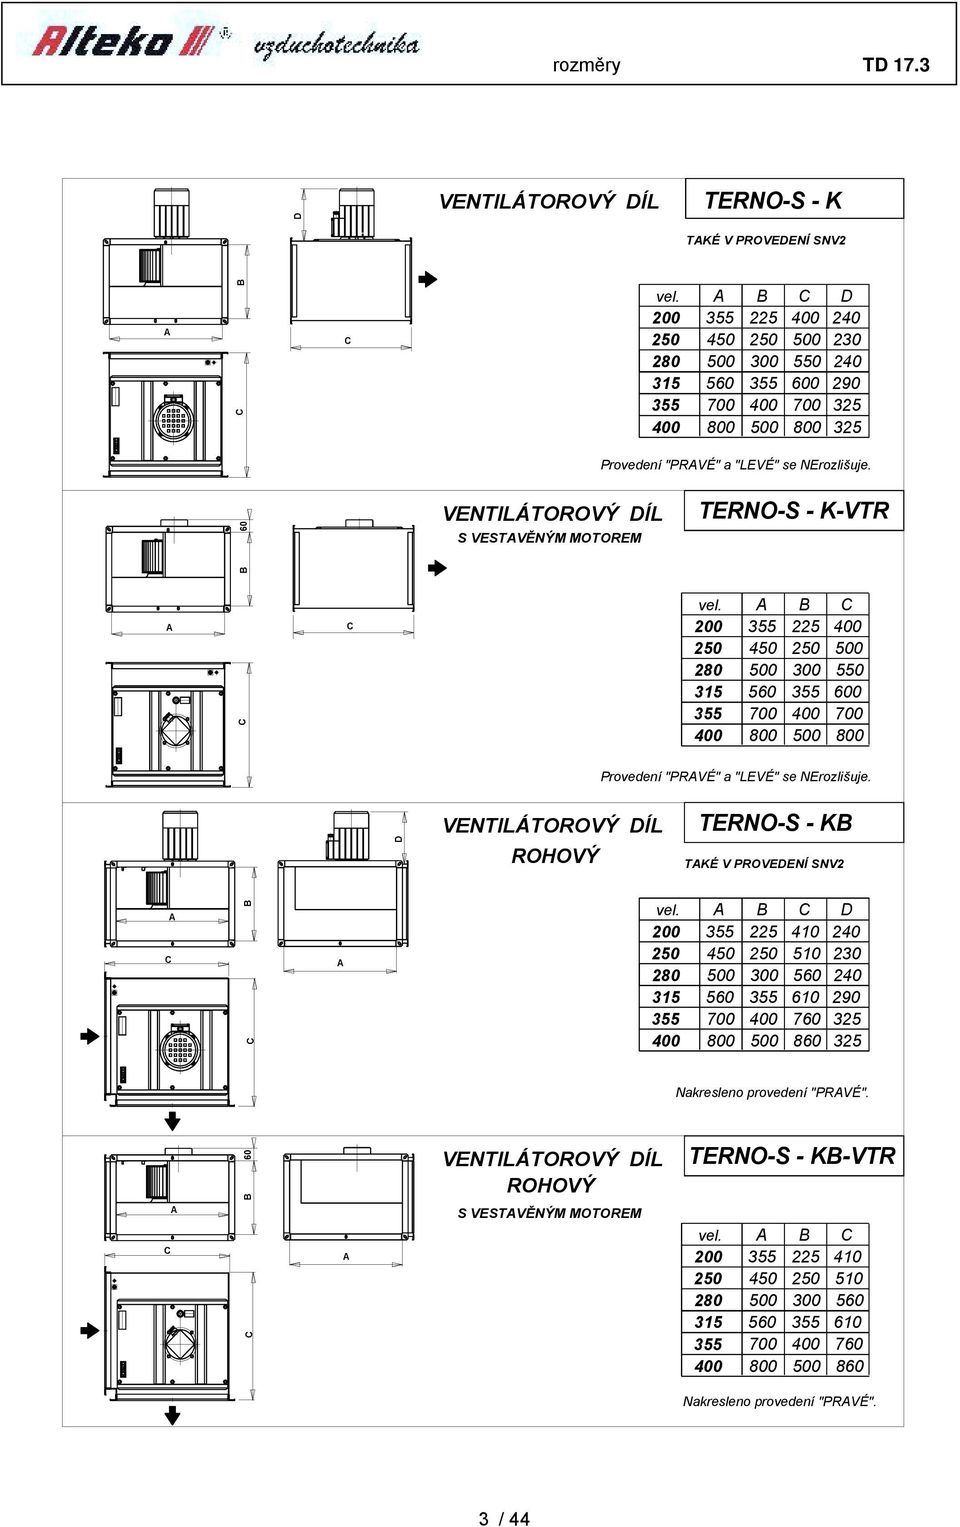 6 VENTILÁTOROVÝ DÍL S VESTVĚNÝM MOTOREM TERNO-S - K-VTR C C vel. 8 C 6 7 8 6 7 8 Provedení "PRVÉ" a "LEVÉ" se NErozlišuje.